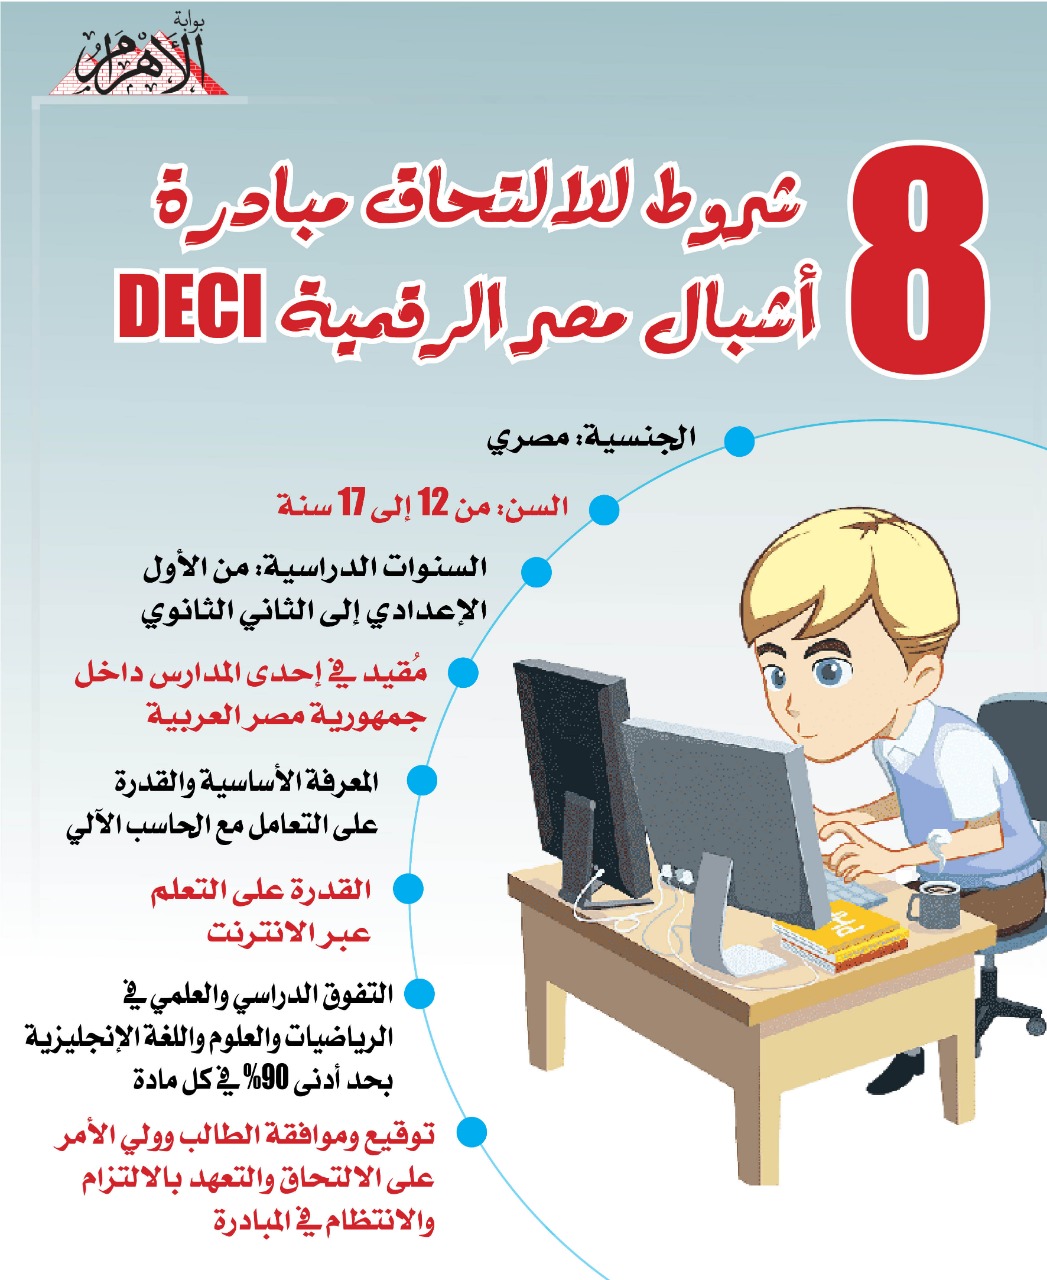 8 شروط للالتحاق بمبادرة أشبال مصر الرقمية DECI